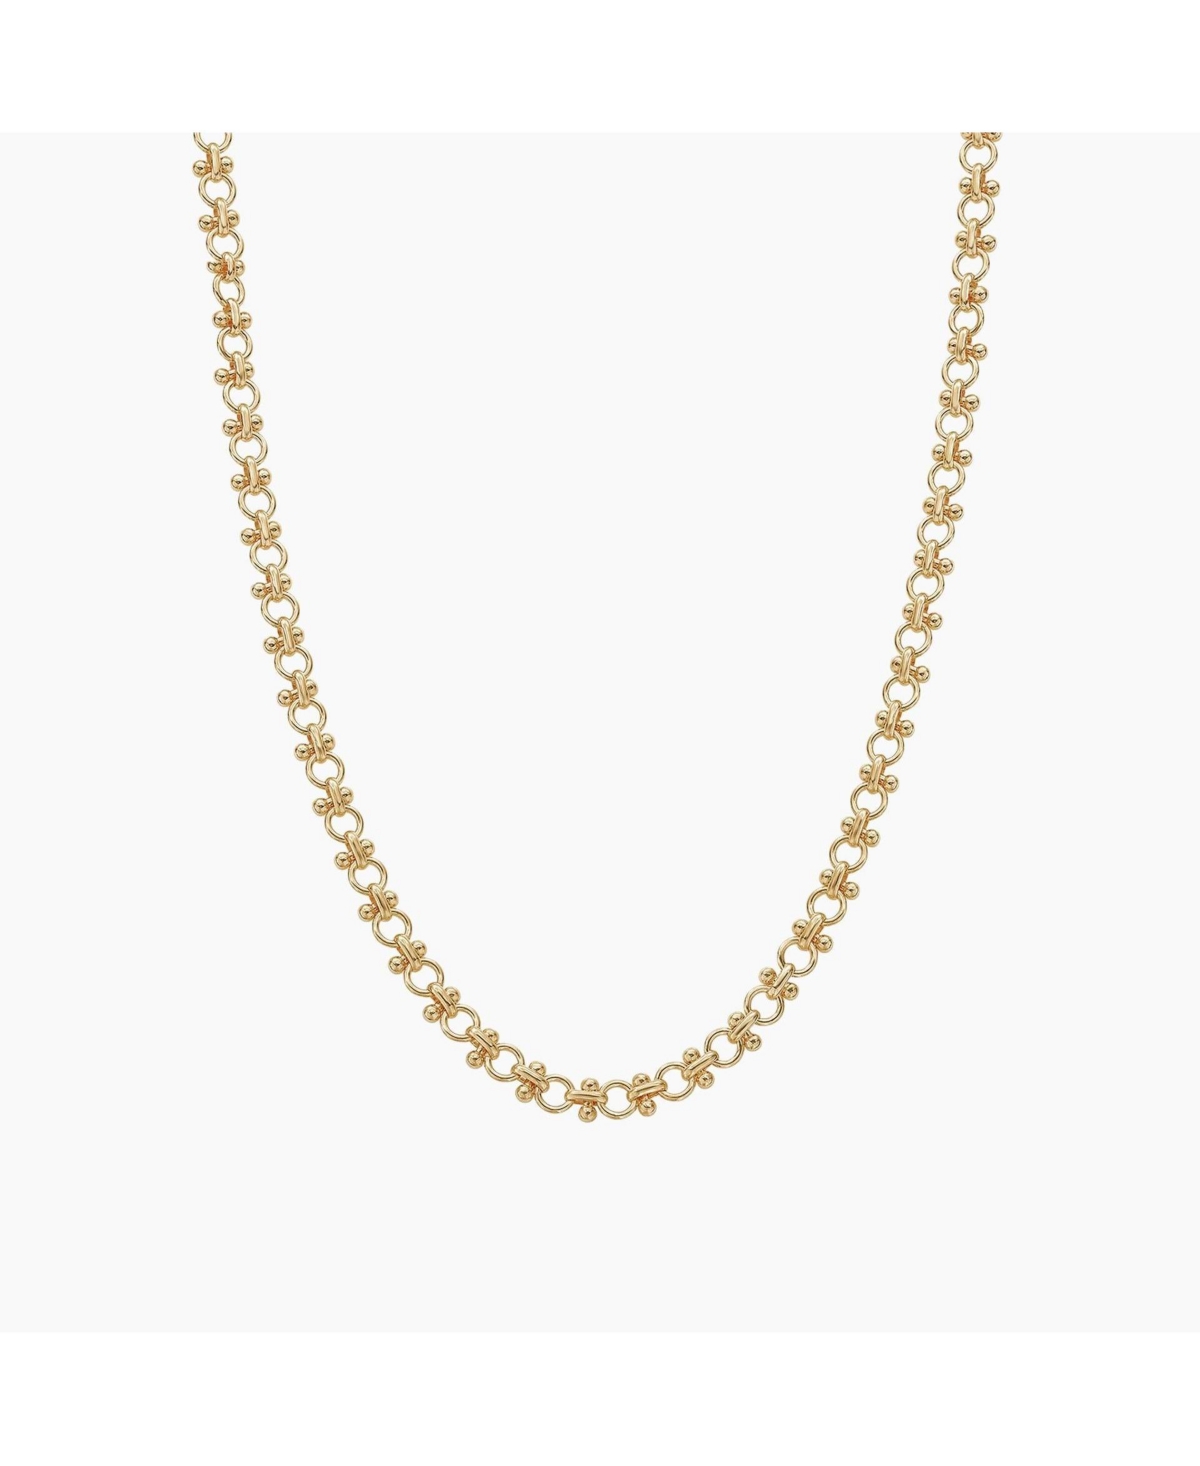 Lattice Chain Necklace - Gold